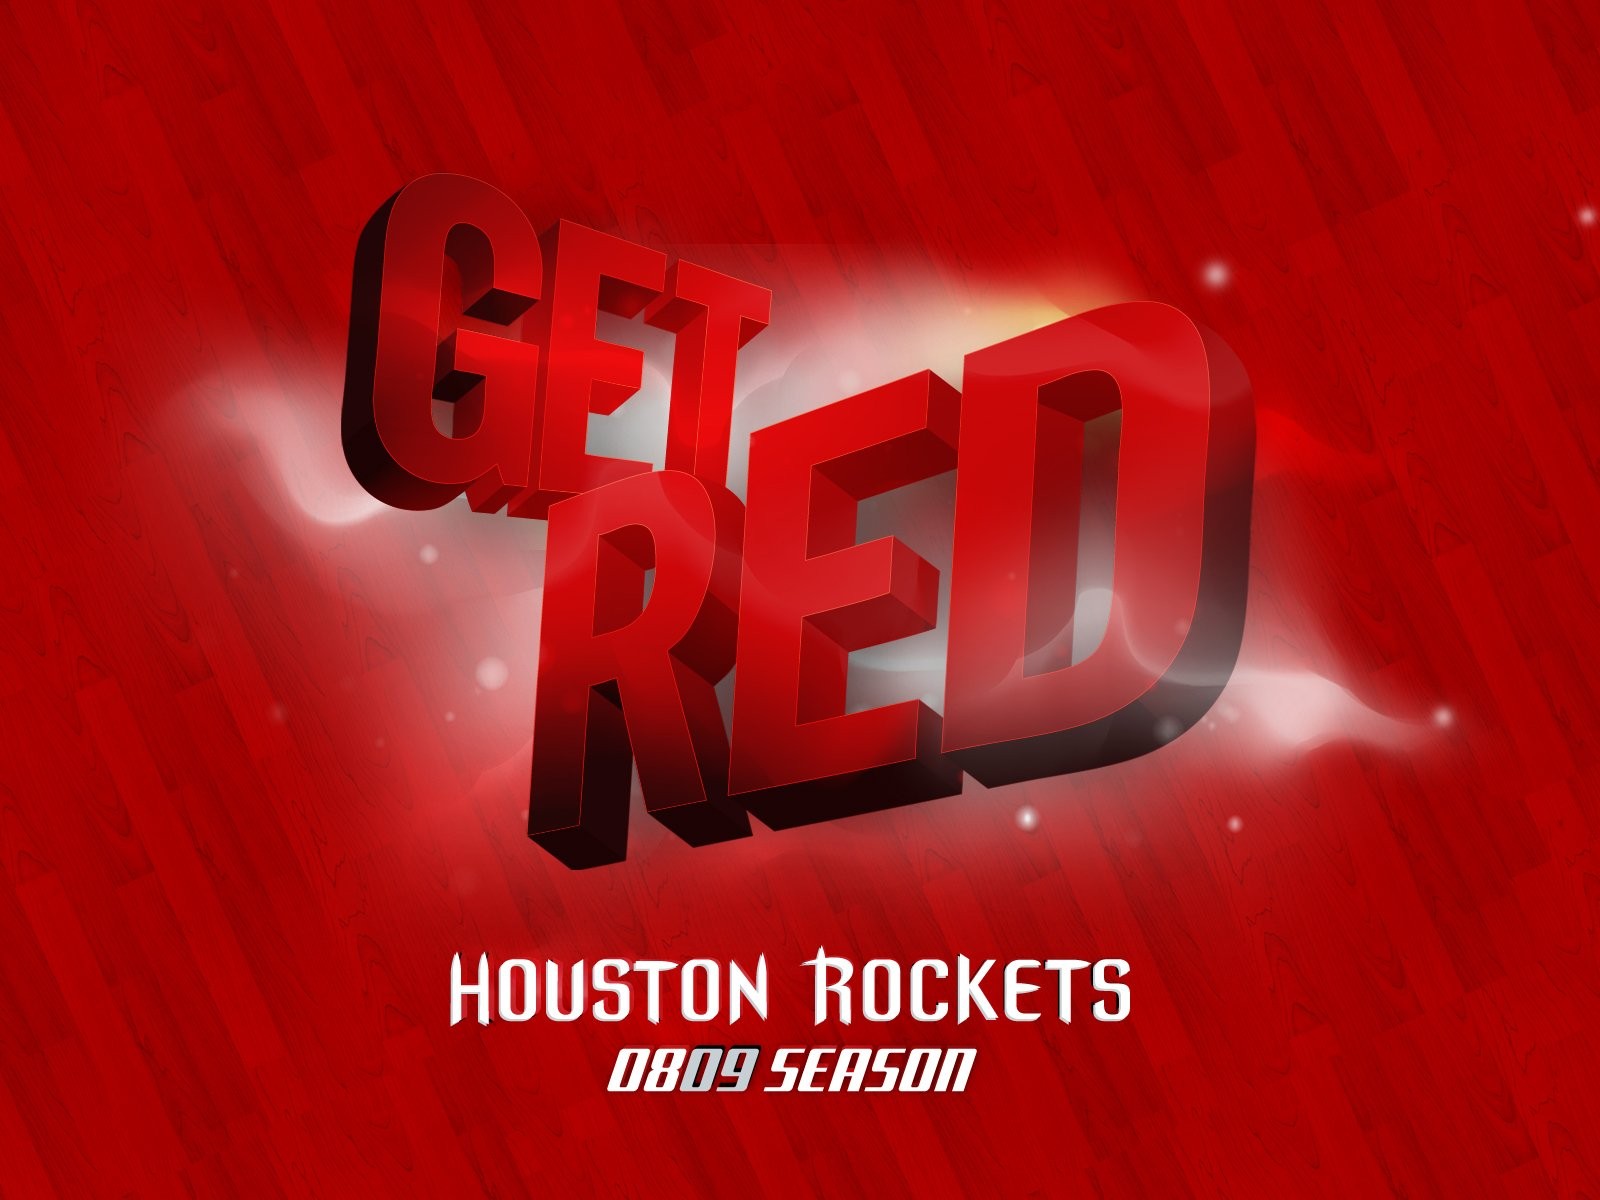 NBA Houston Rockets 2009 fondos de escritorio de los playoffs #5 - 1600x1200